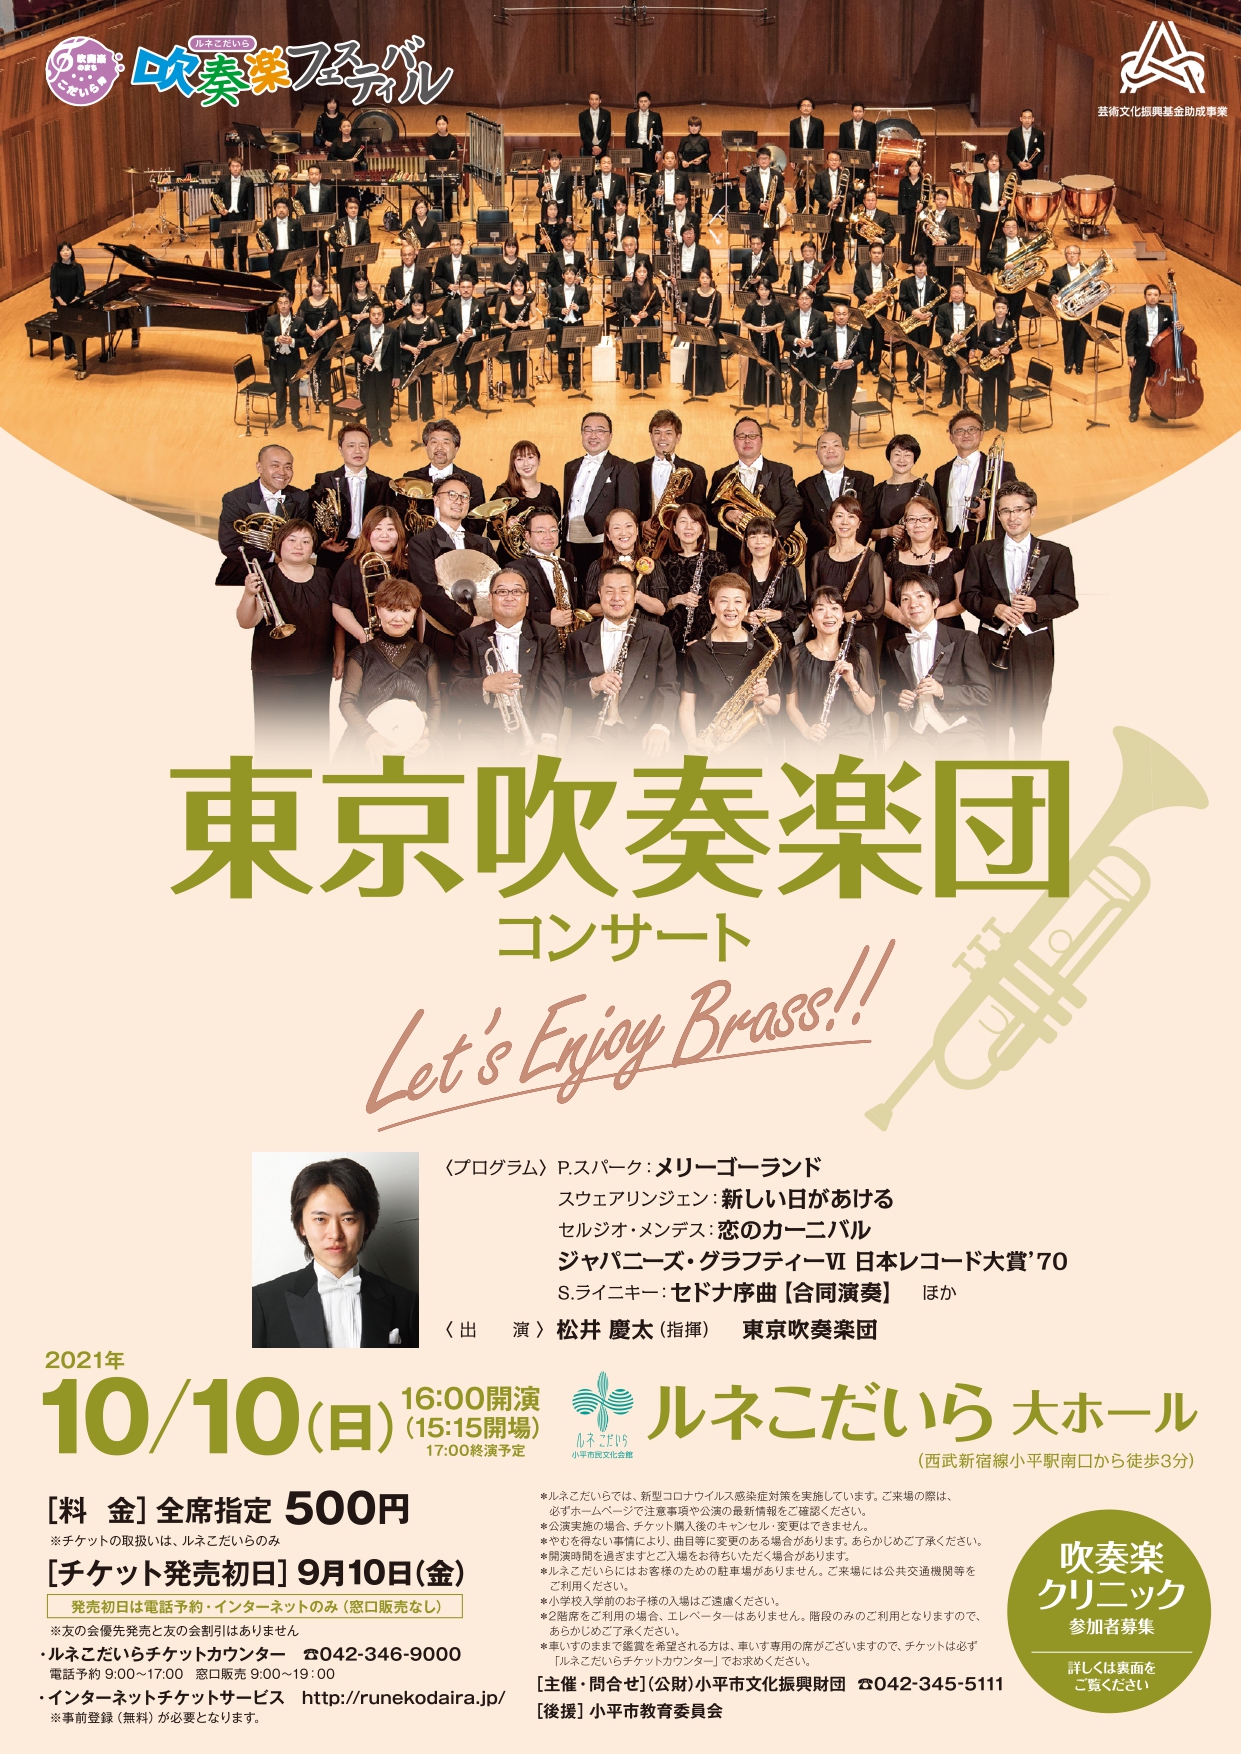 東京吹奏楽団コンサートのチラシの画像